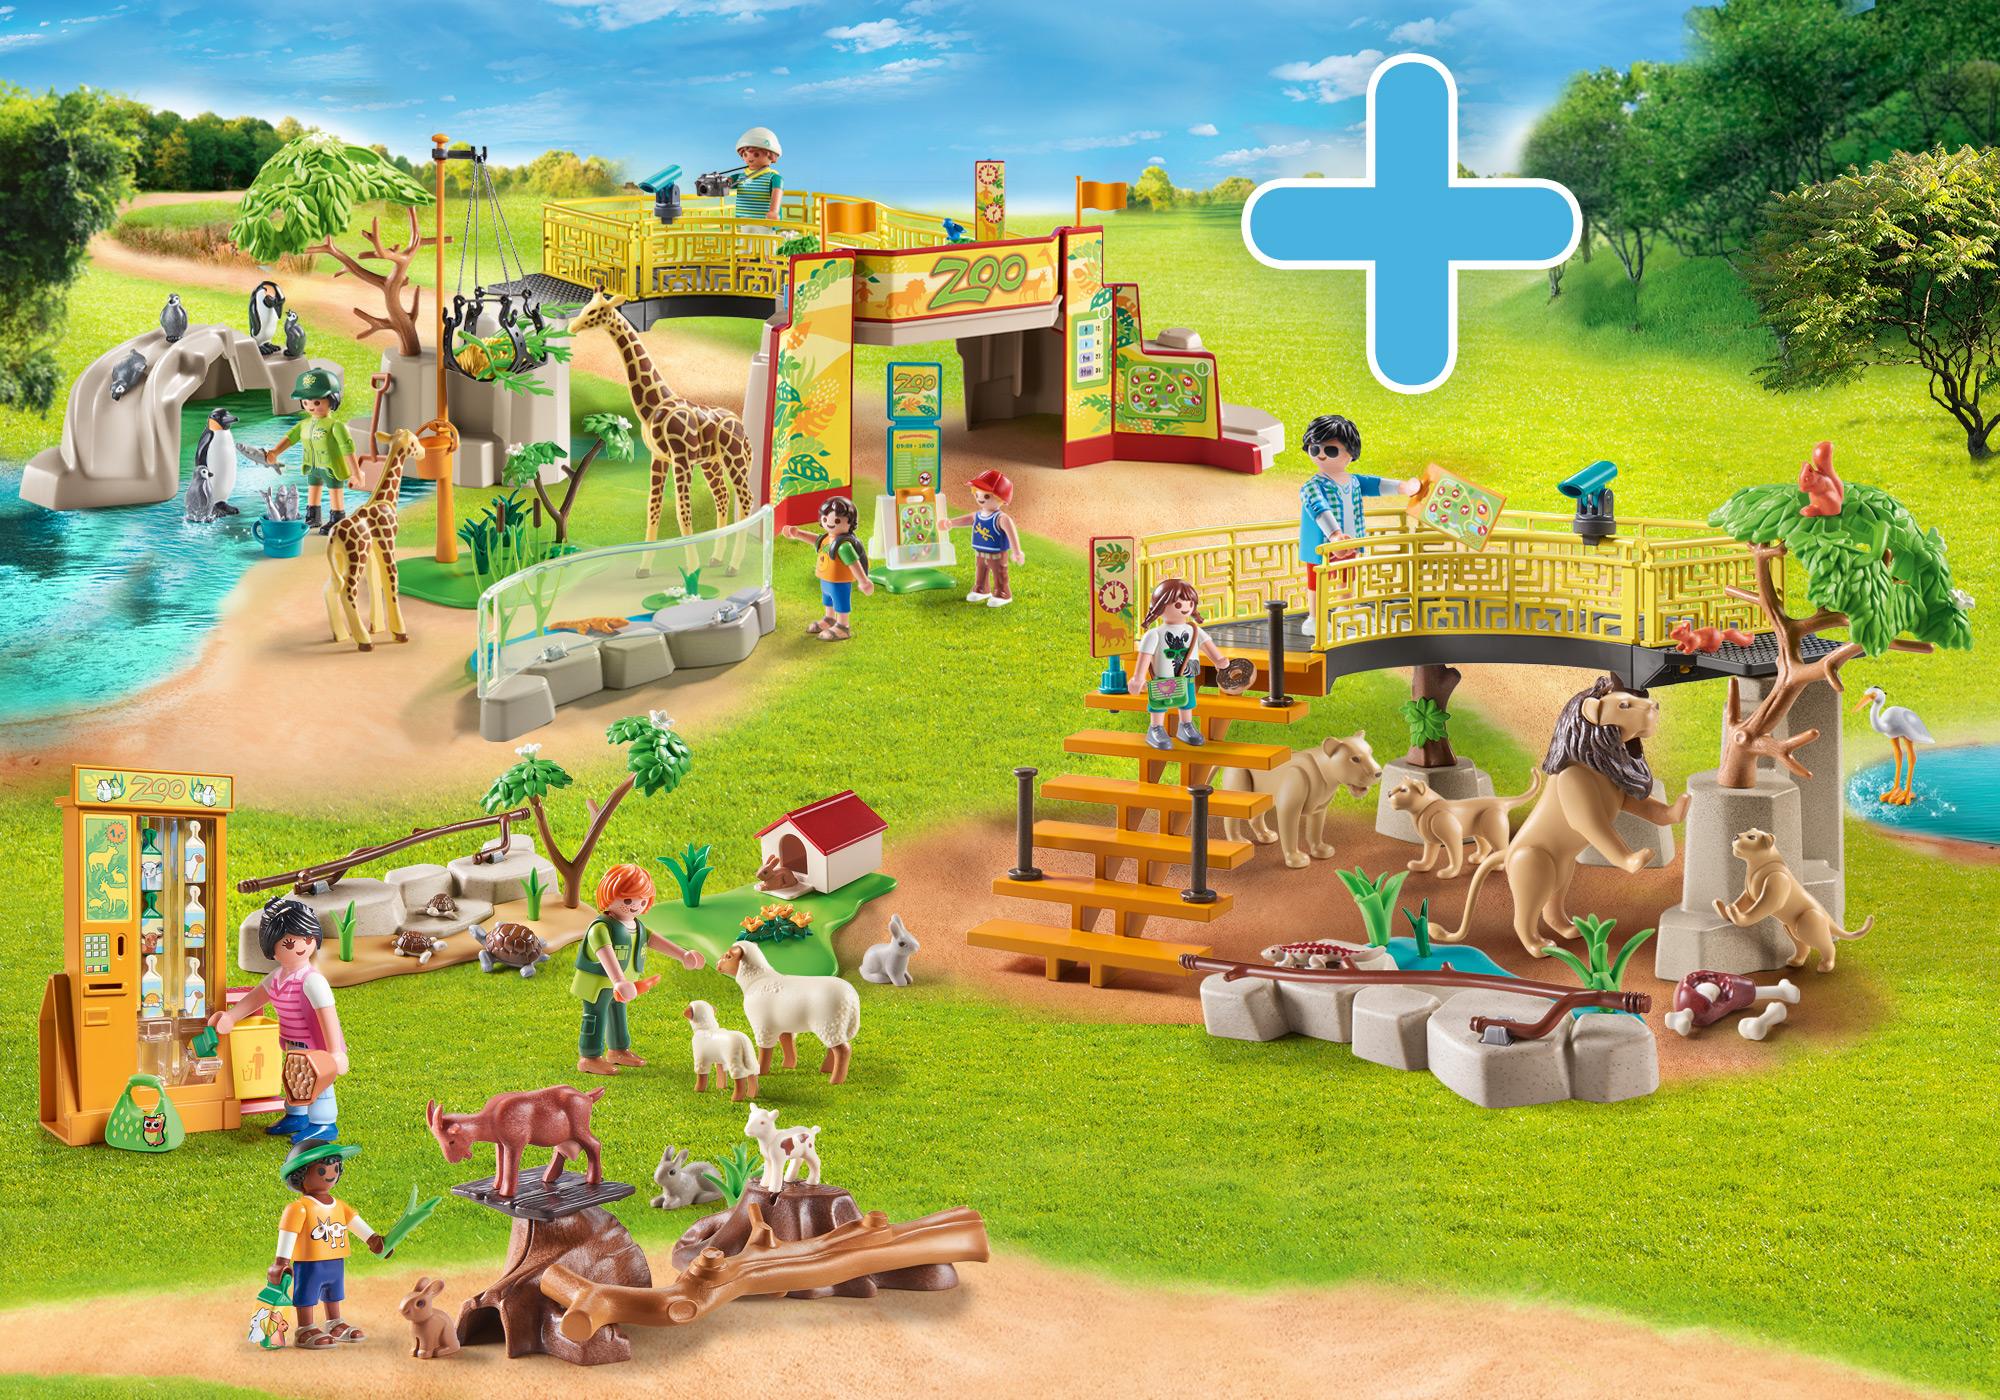 Playmobil Adventure Zoo Golden